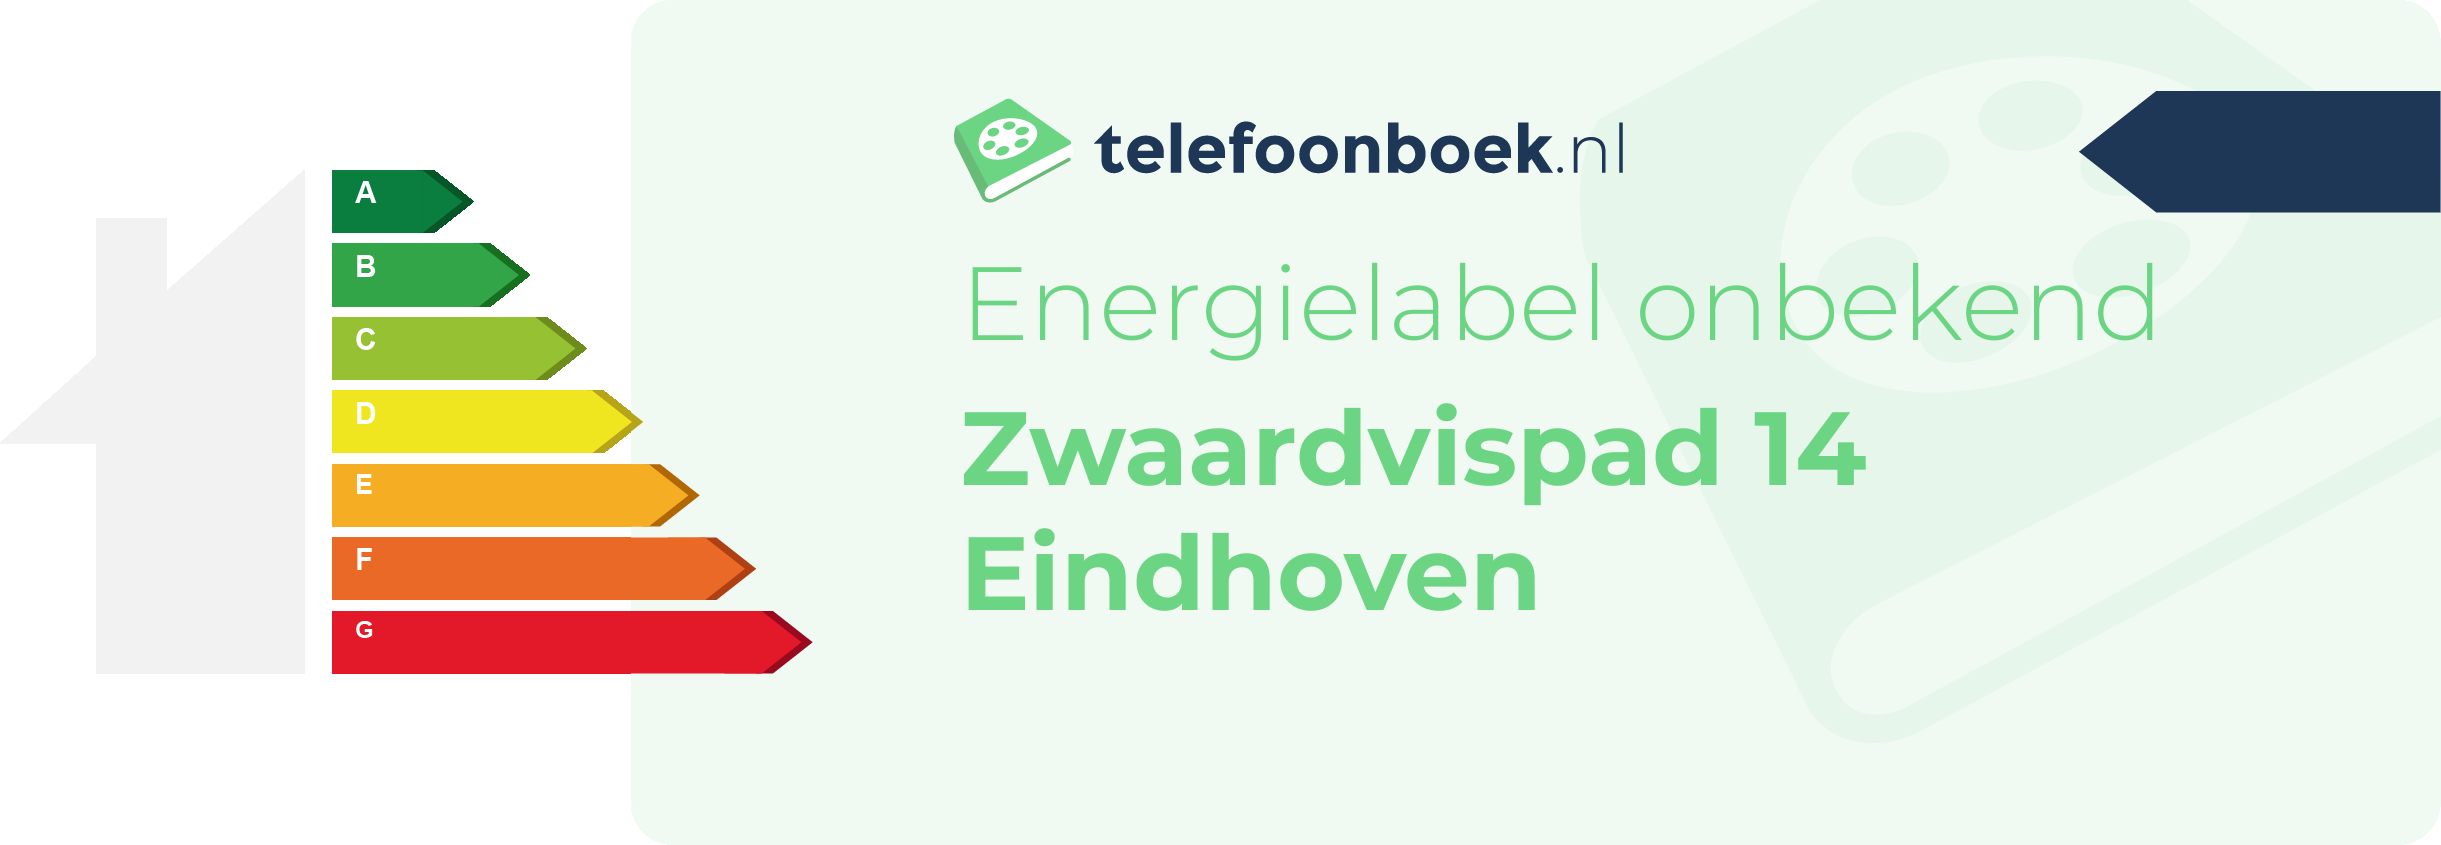 Energielabel Zwaardvispad 14 Eindhoven